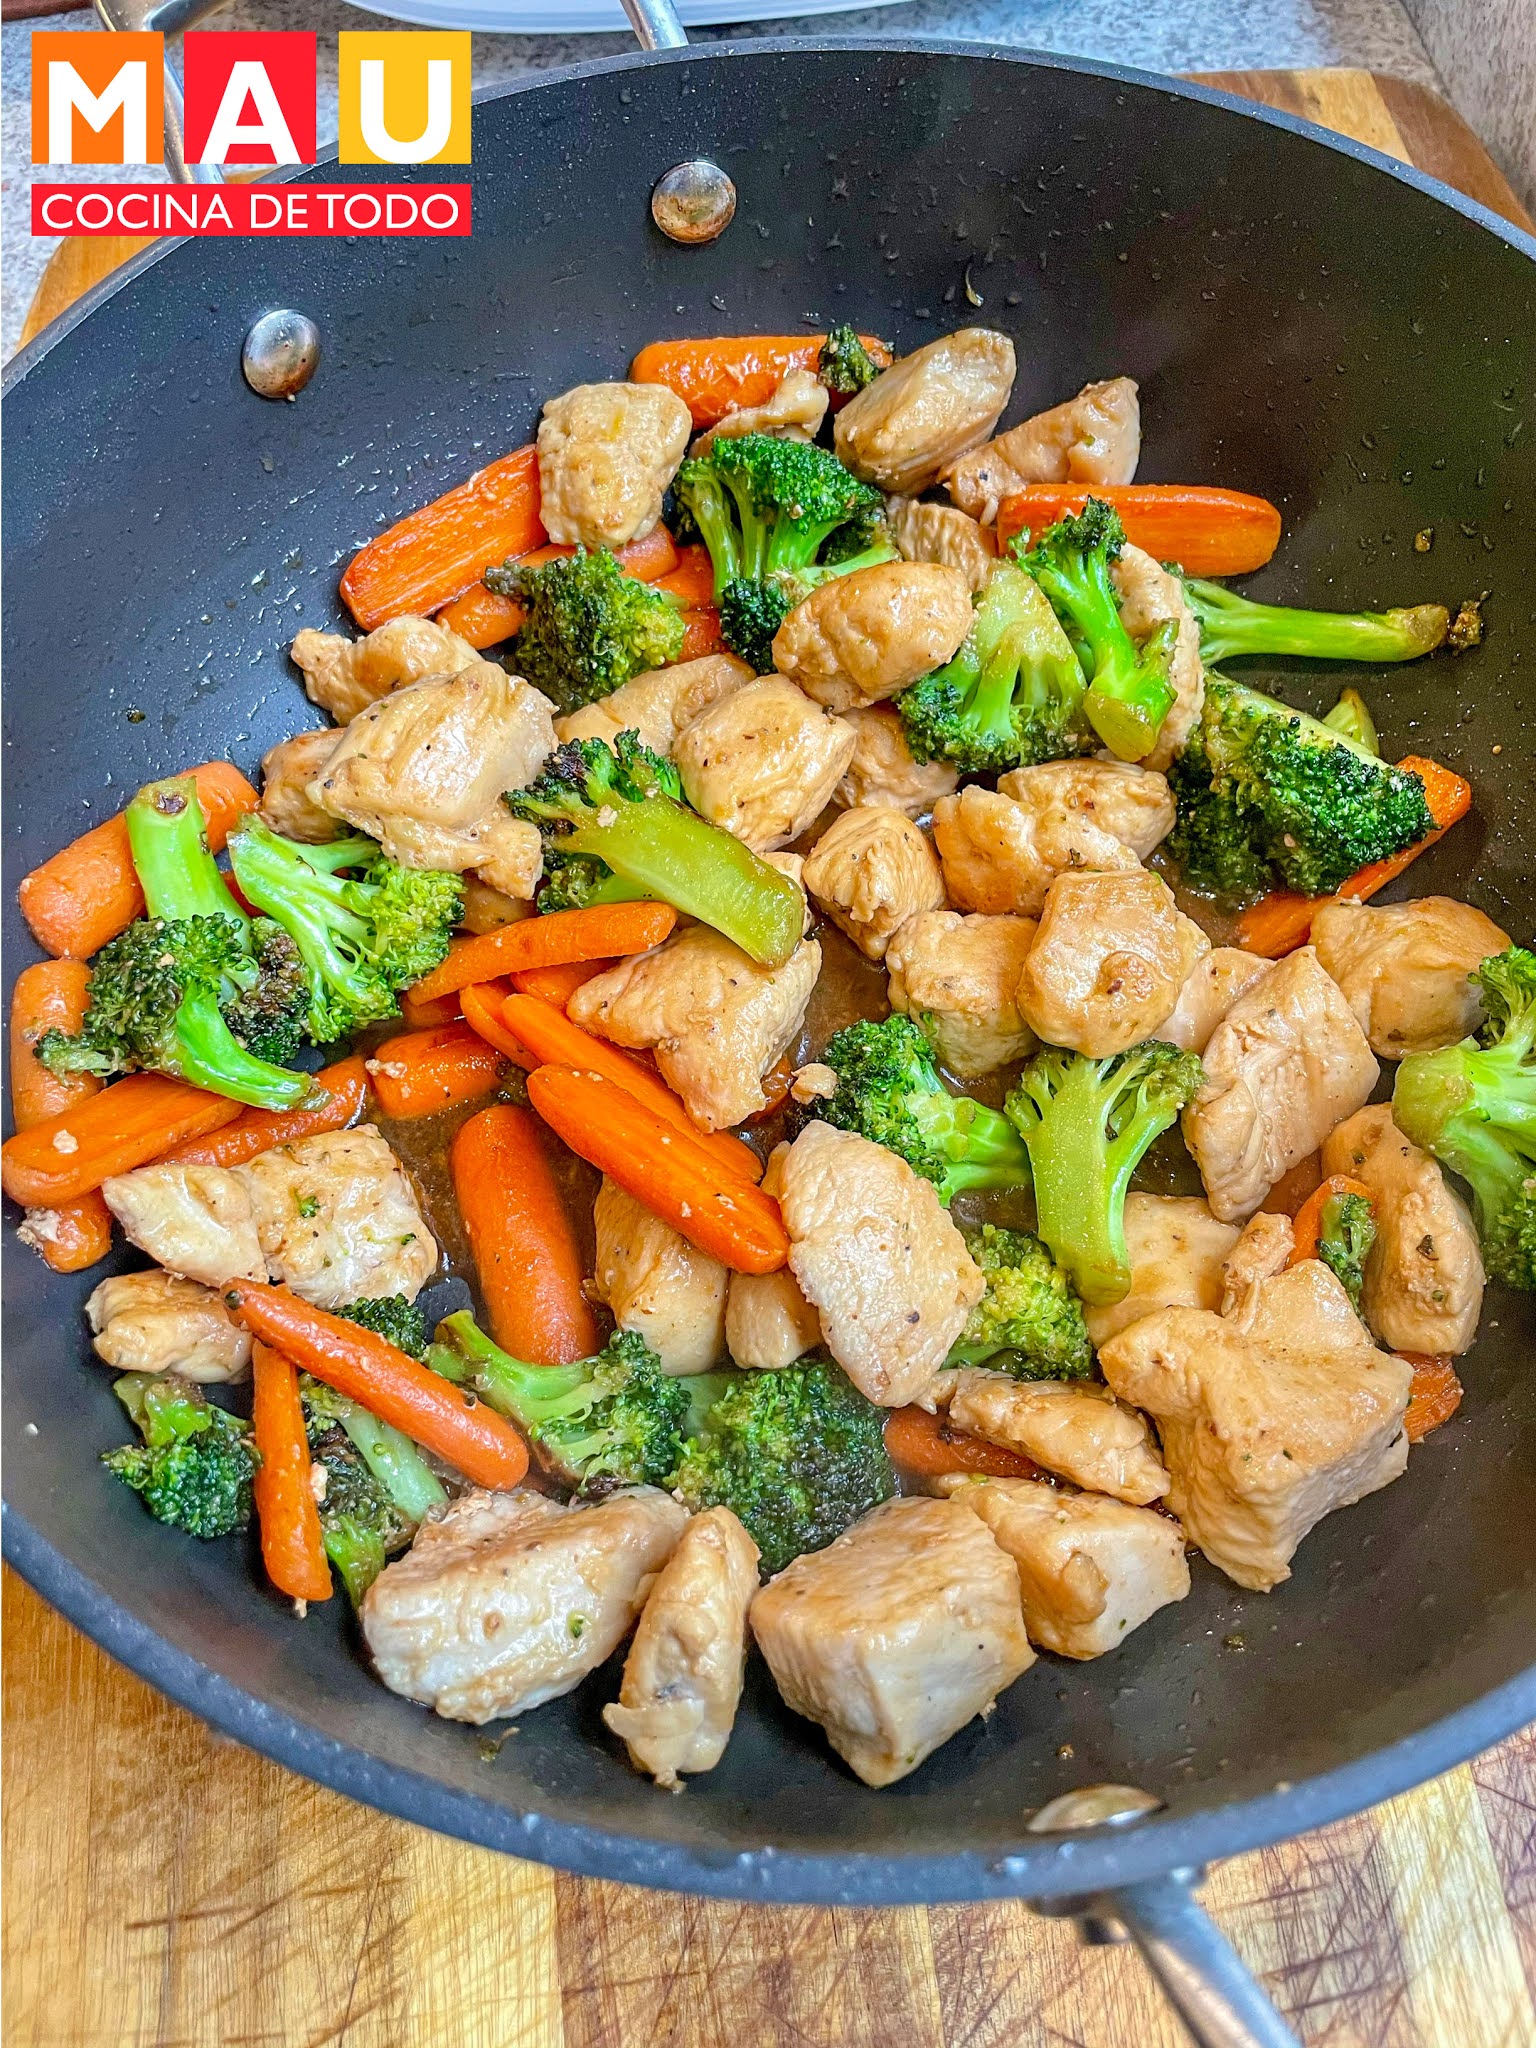 Stir Fry de Pollo con Brócoli y Zanahoria - Mau Cocina de todo